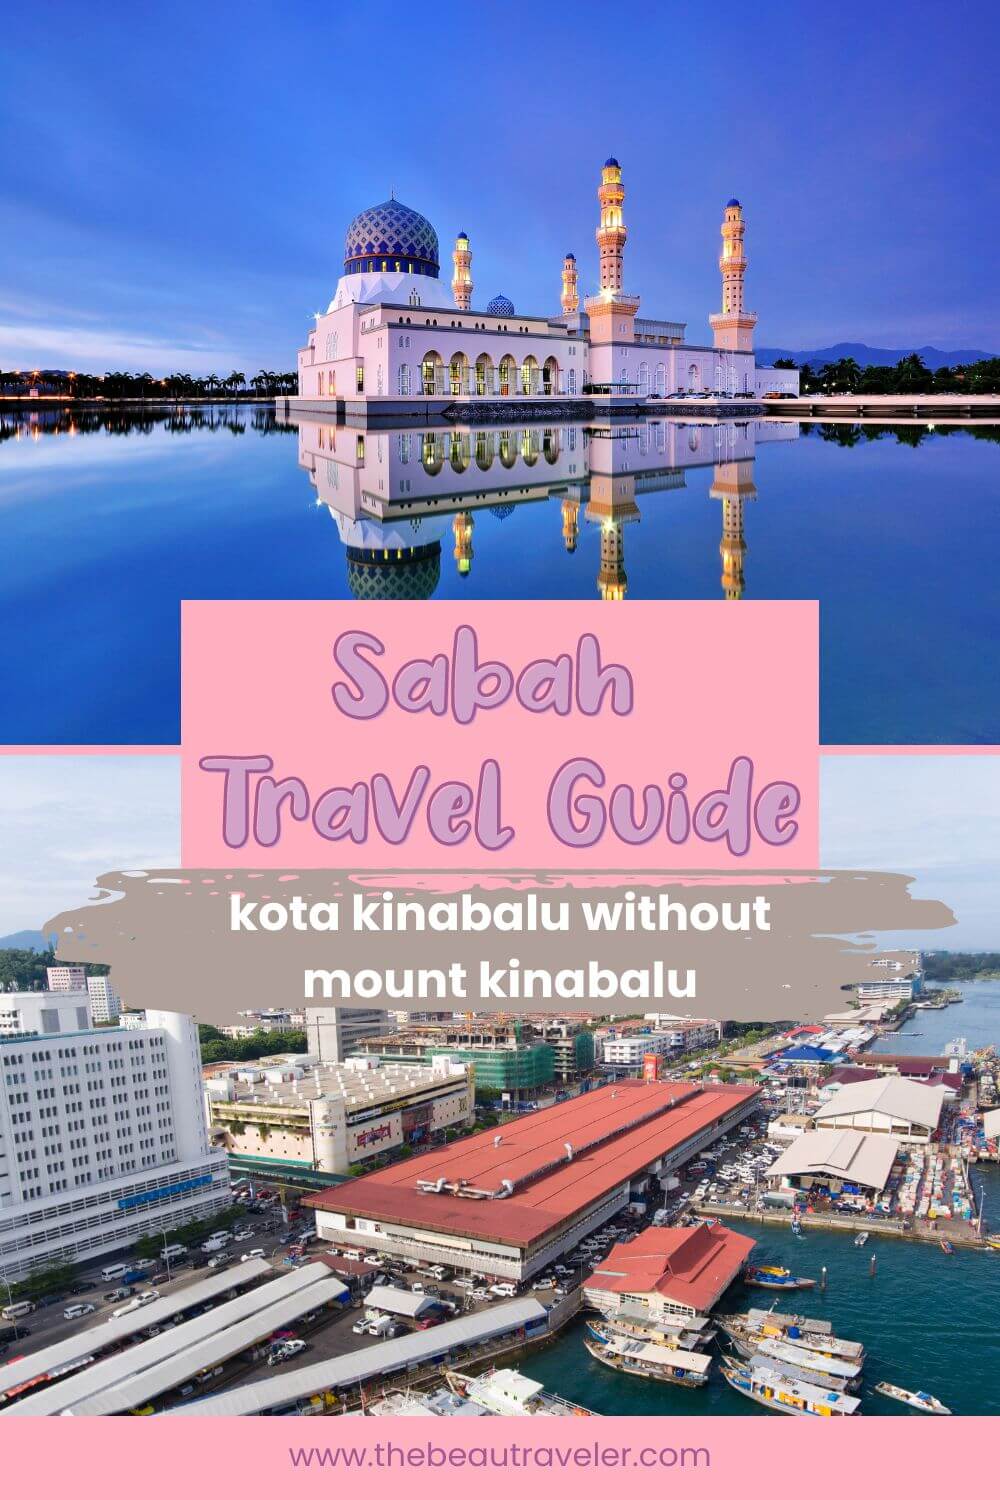 Sabah Travel Guide - The BeauTraveler